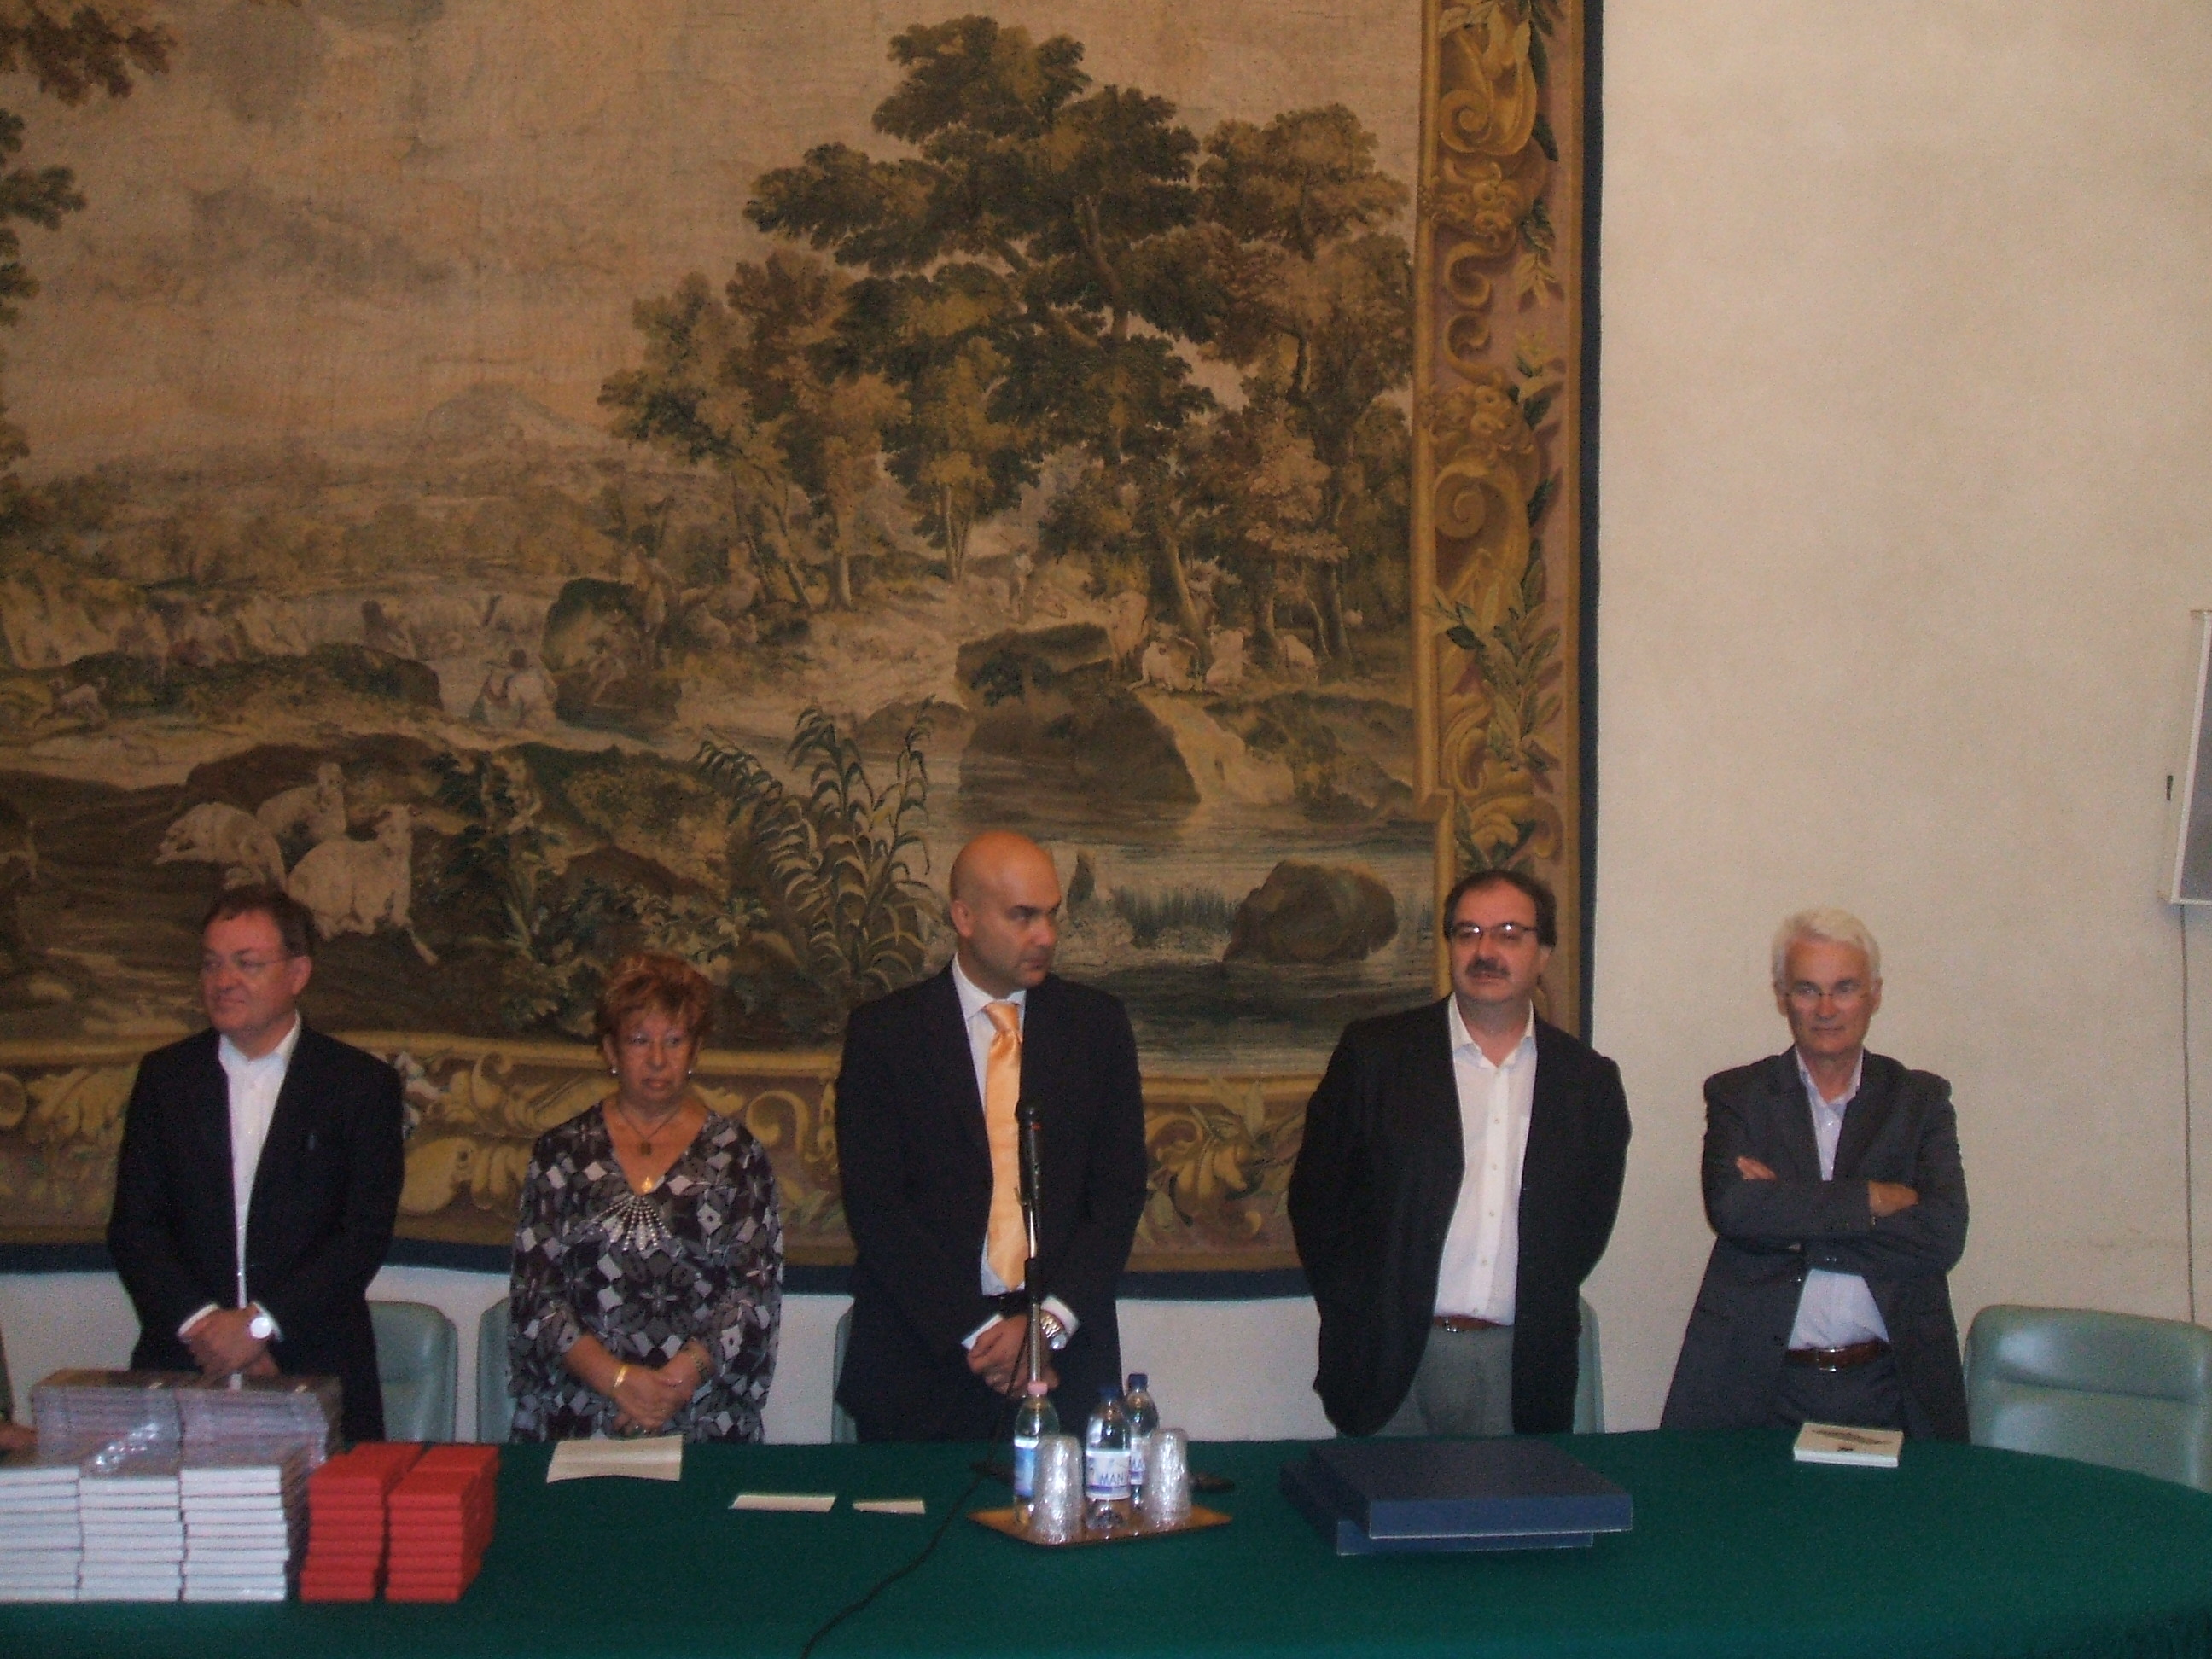 Da sinistra a destra: Karl Dieter, Sindaco di Erzhausen, l'assessore di Malgrat de Mar Anna Raja, il Presidente Mattei, il Sindaco Giovannoni, il consigliere Morandini 